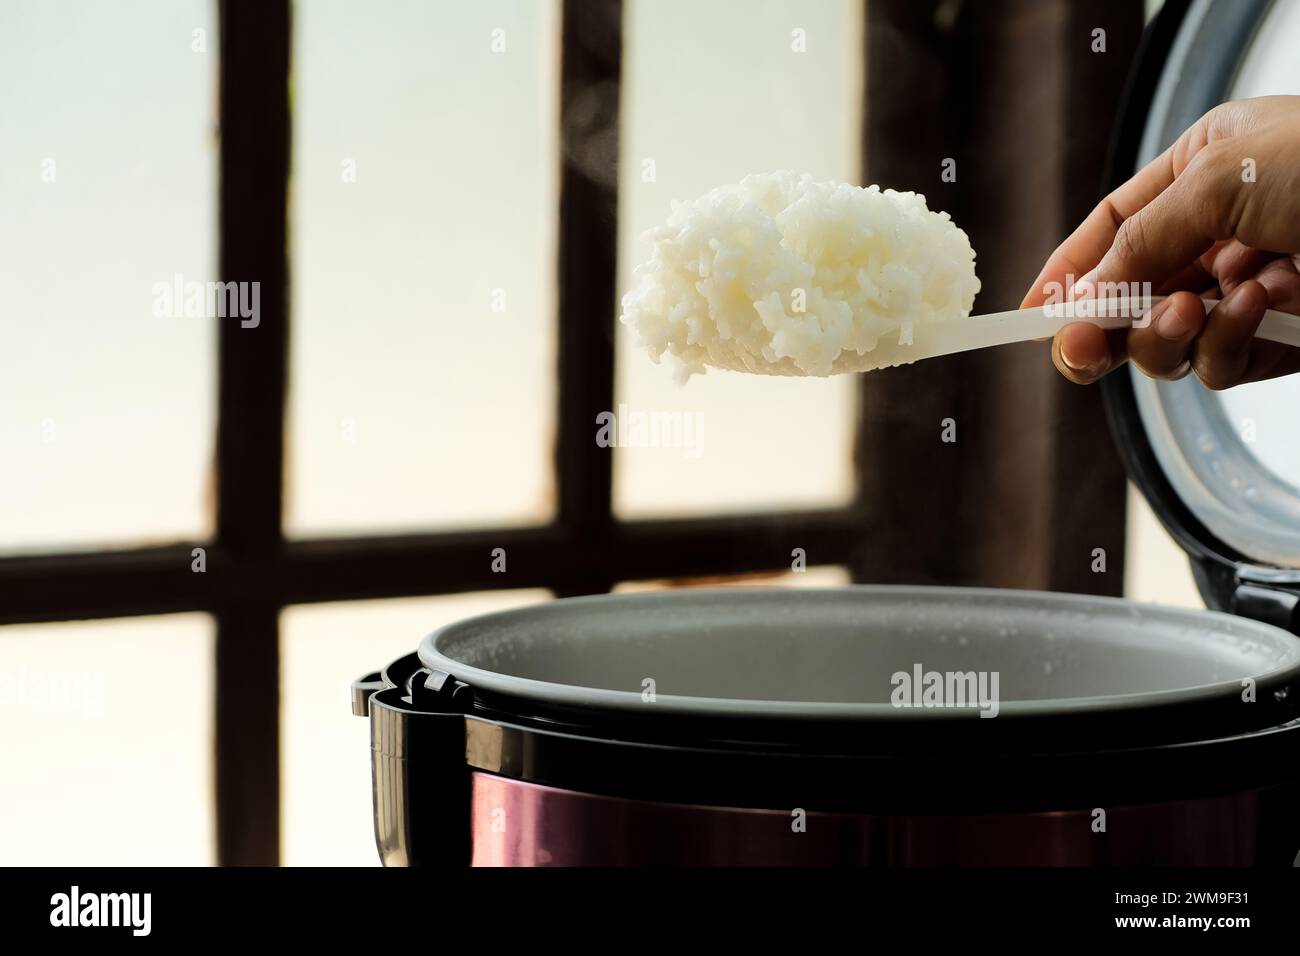 Weißer Reis wird mit Dampf aus einem elektrischen Reiskocher löffelt. Konzept für warme Speisen Stockfoto